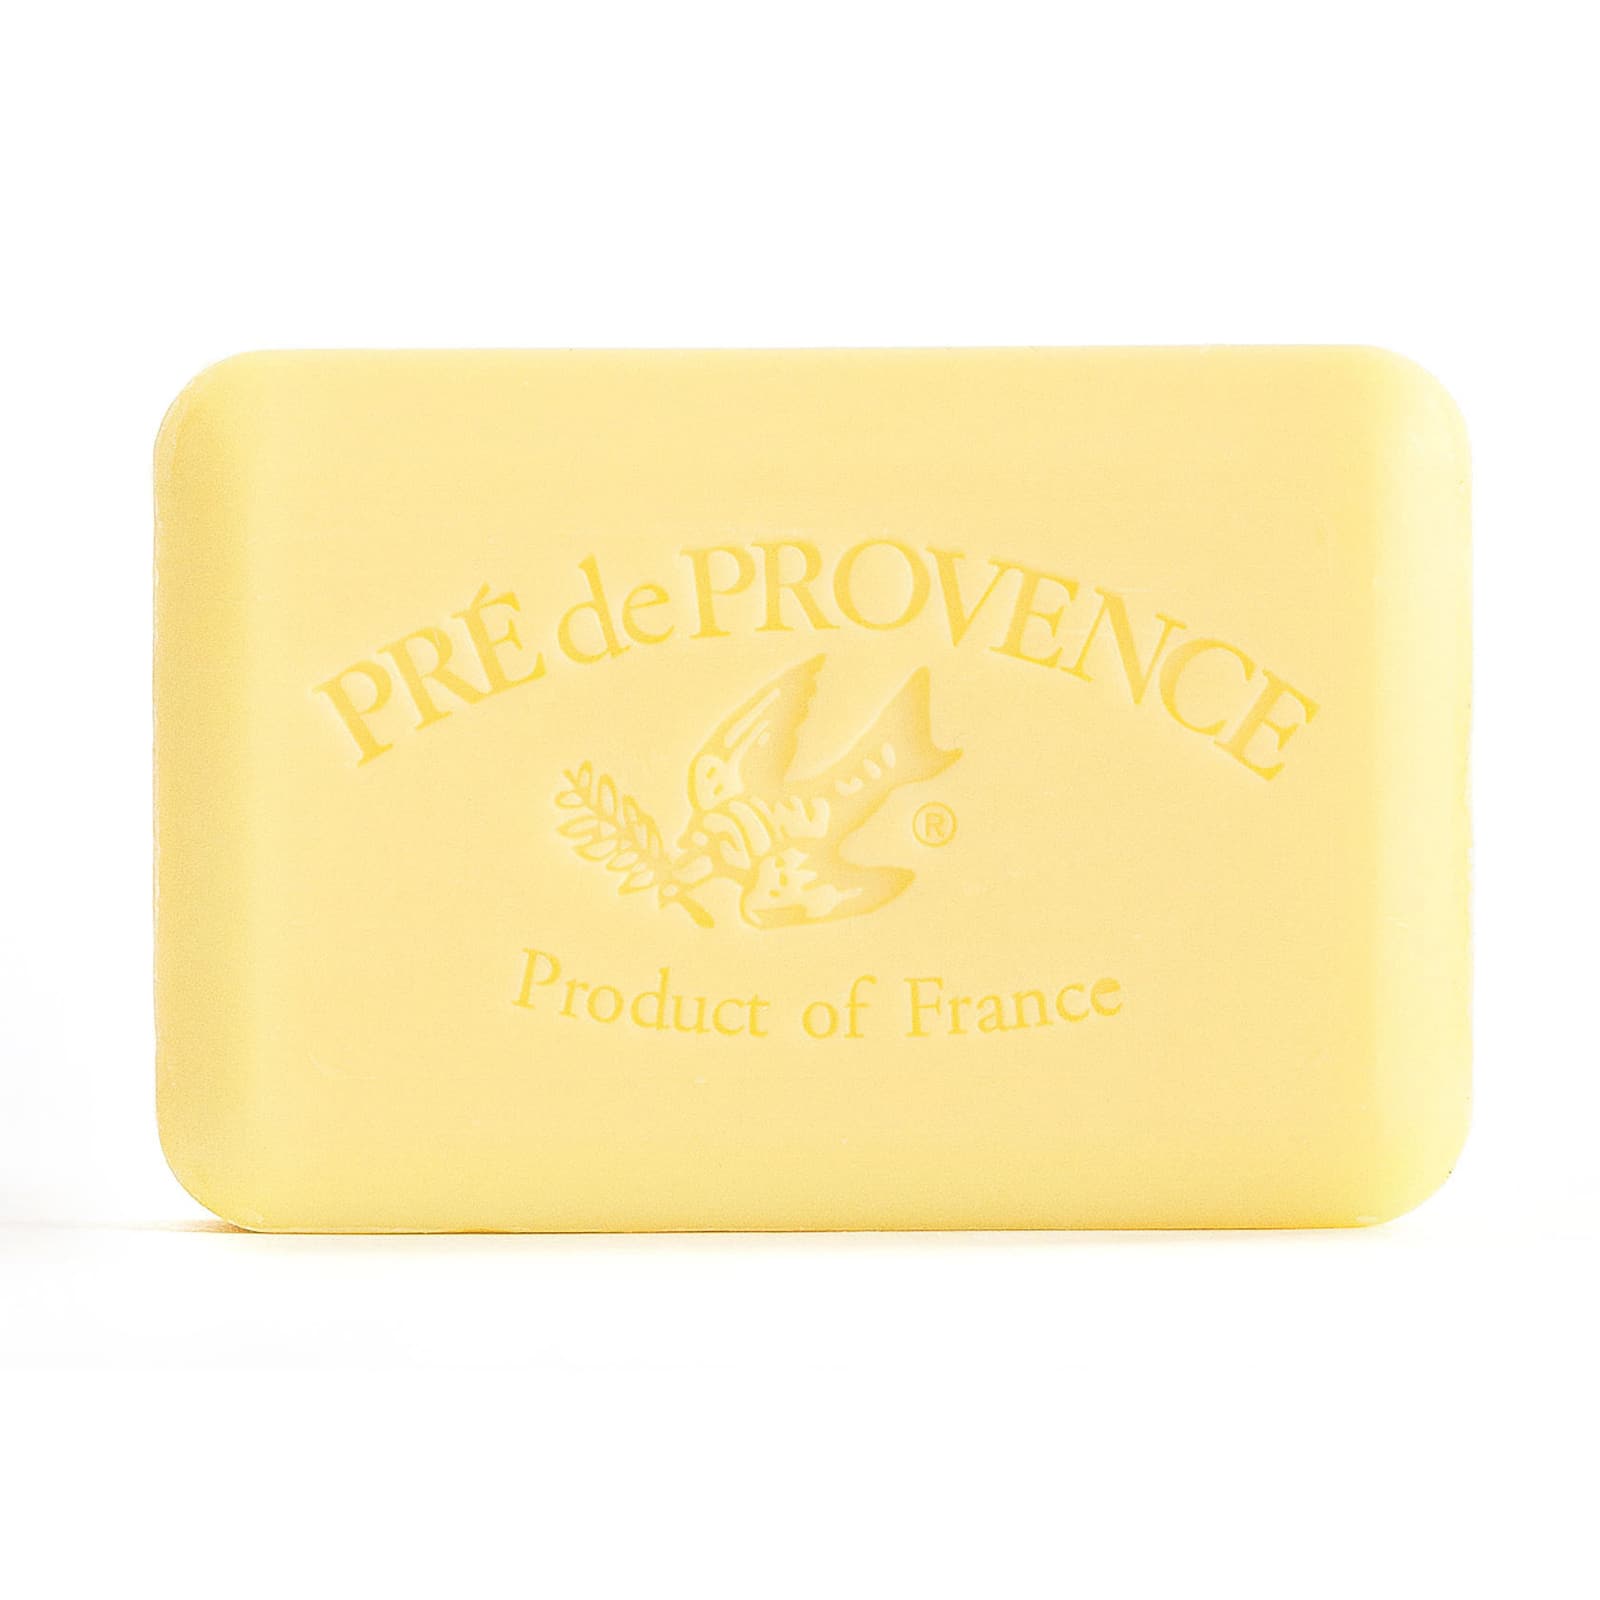 Pre de Provence European Soaps Bar, 250g